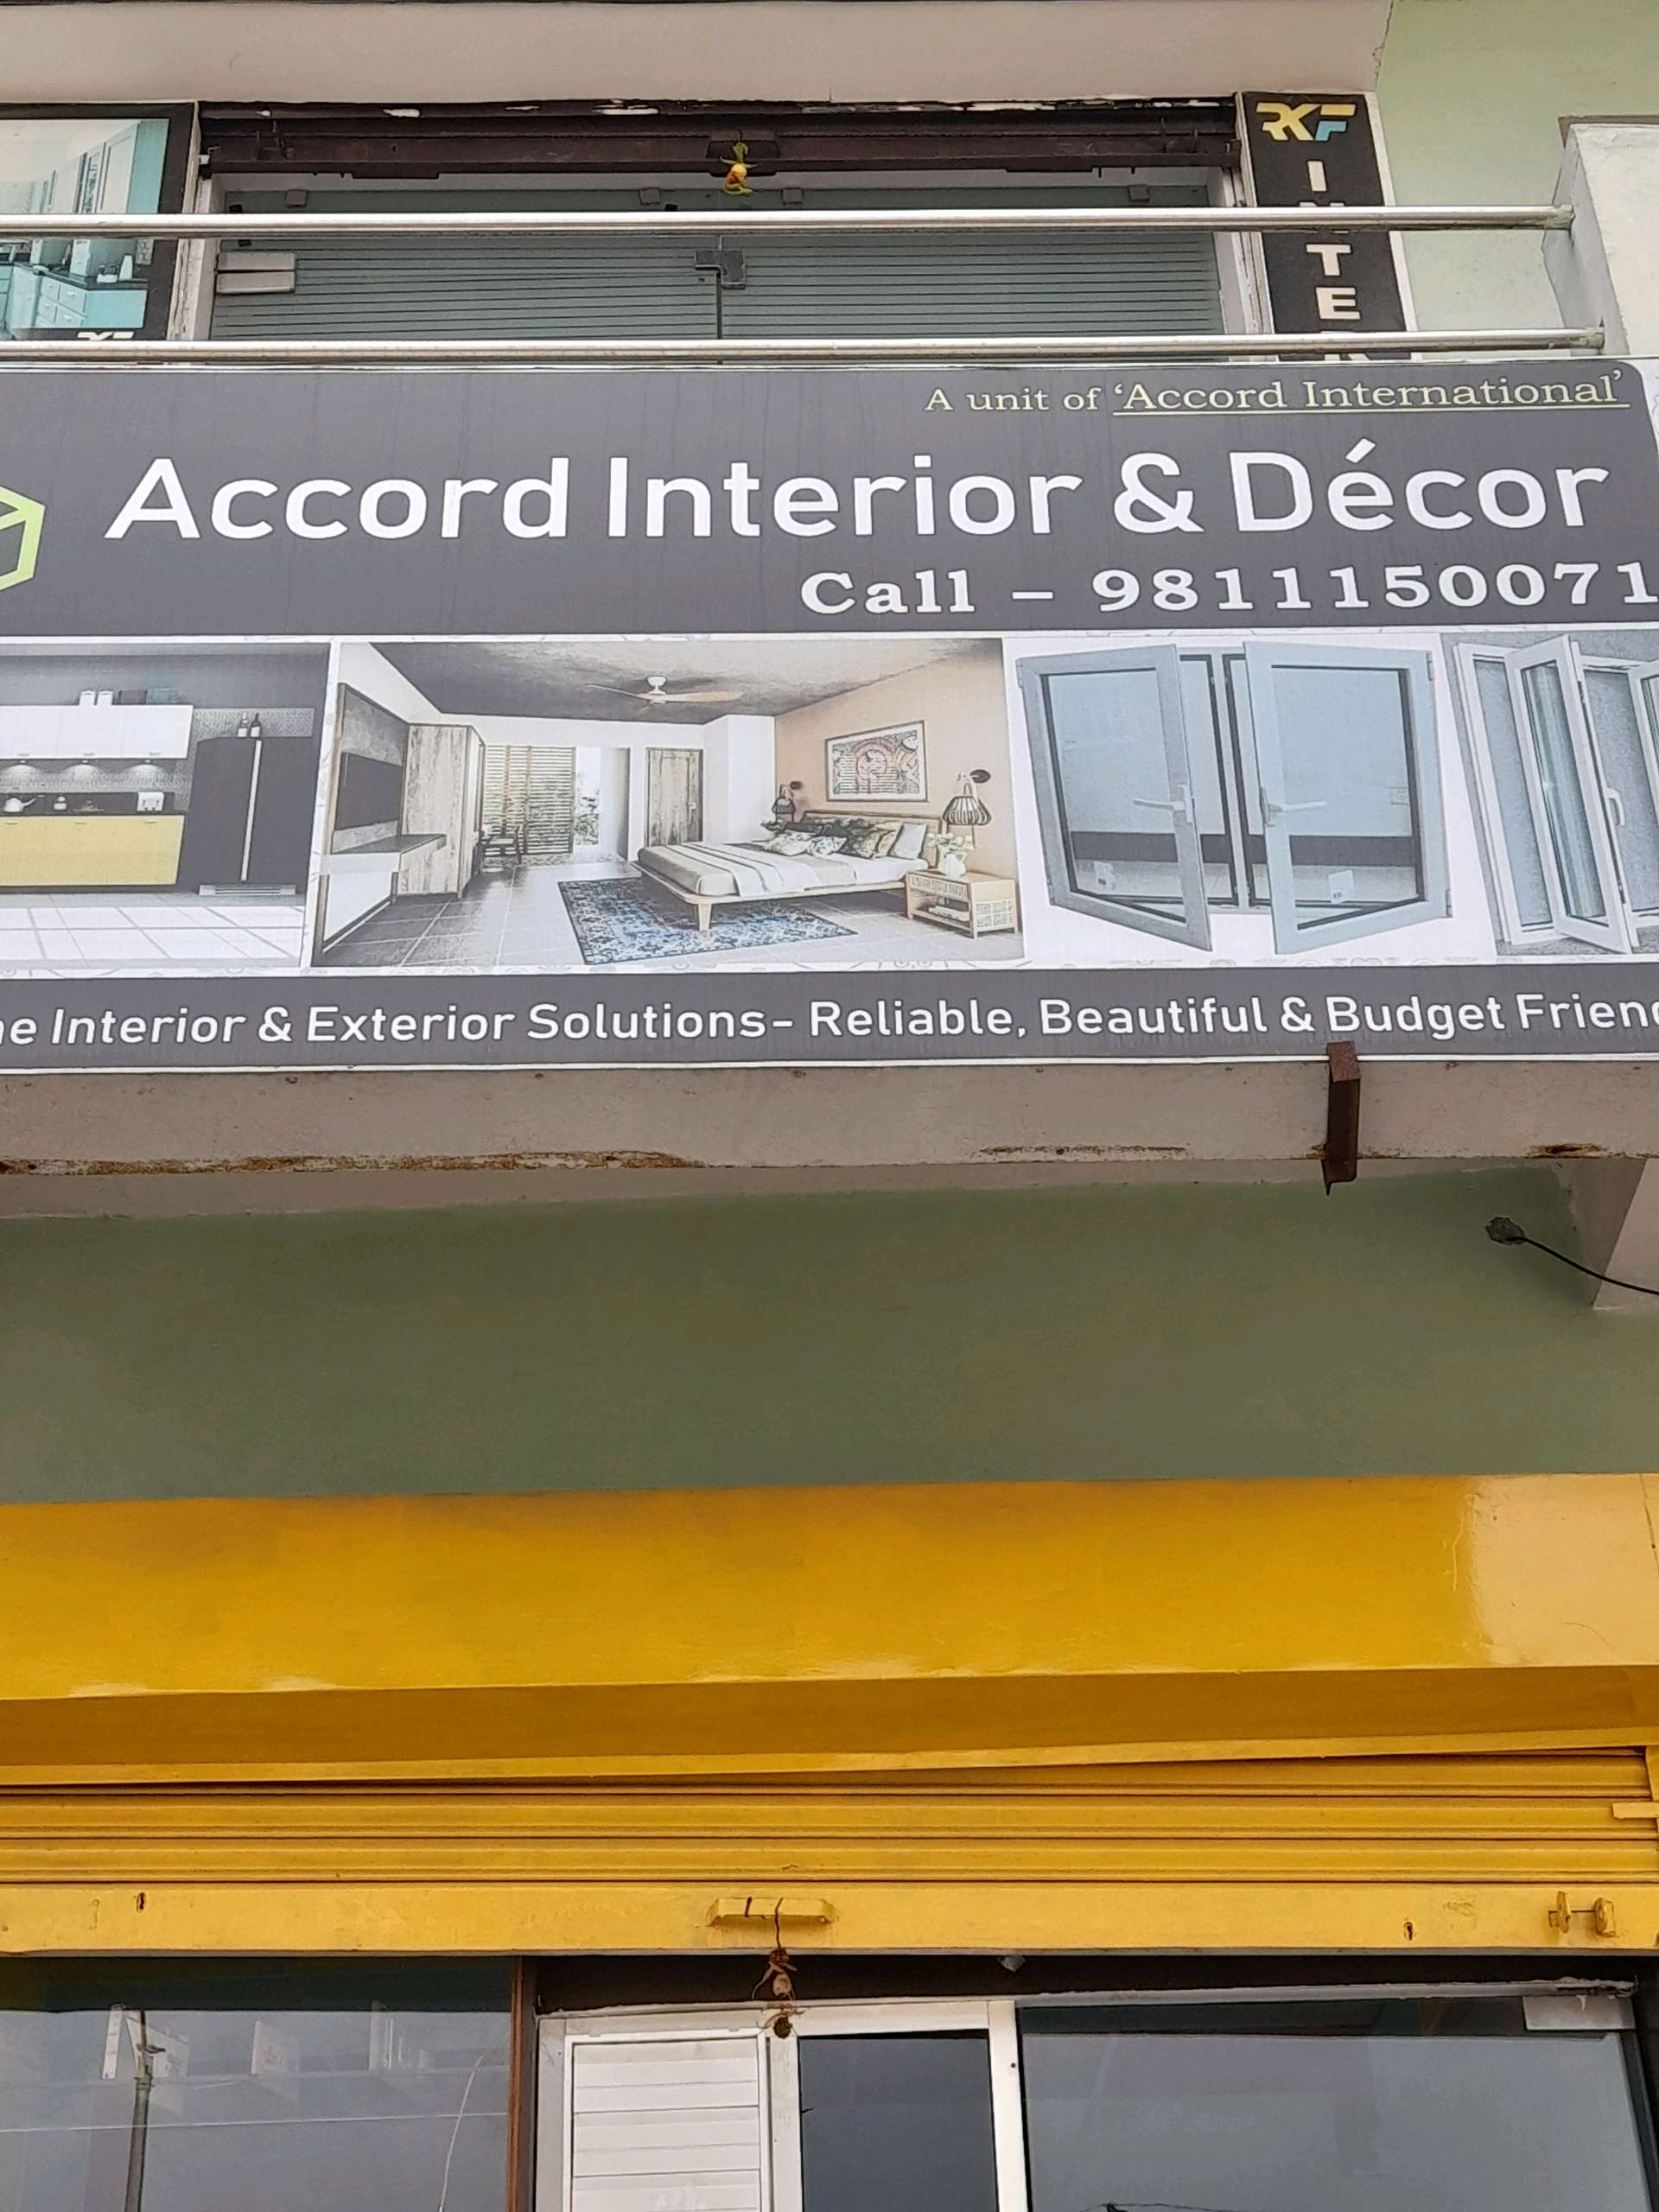 Accord Interior & Decor